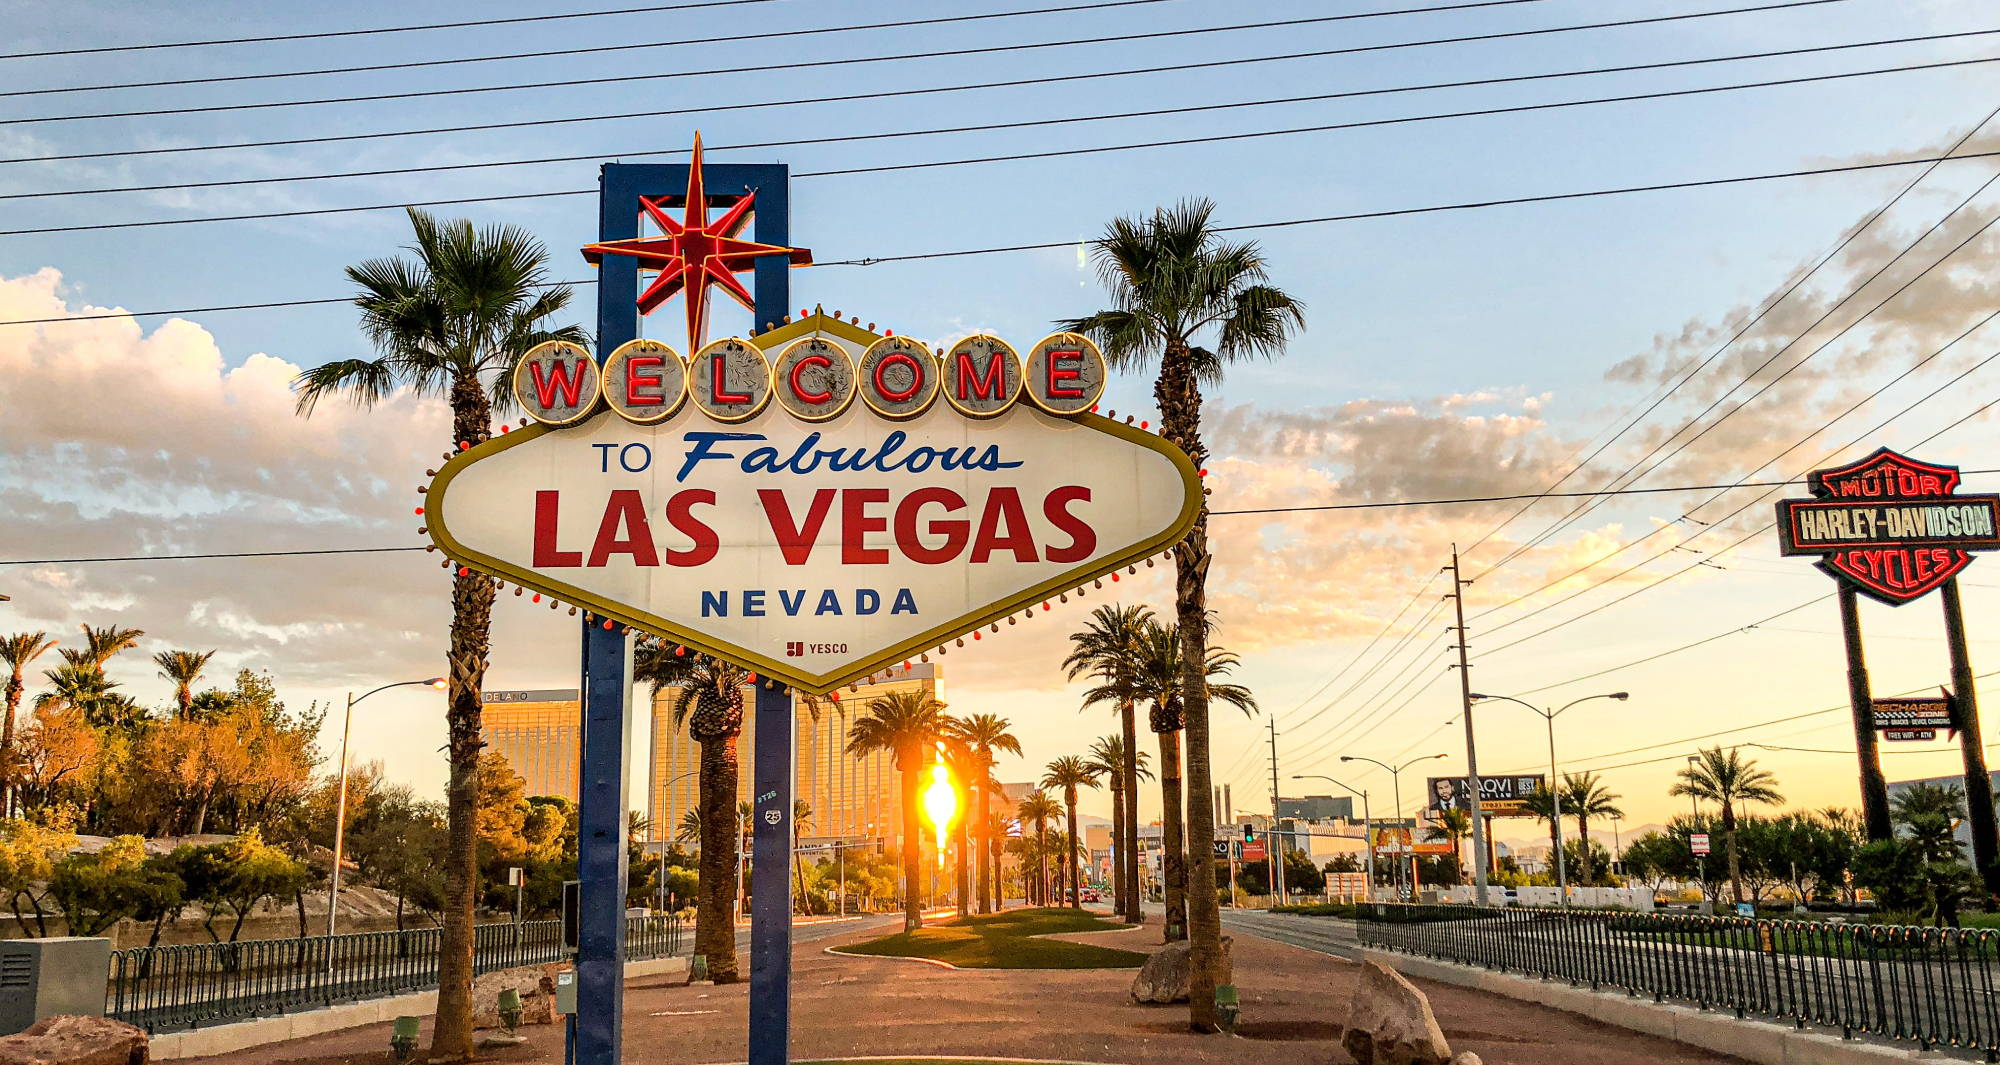 The fabulous Las Vegas sign at sunrise.